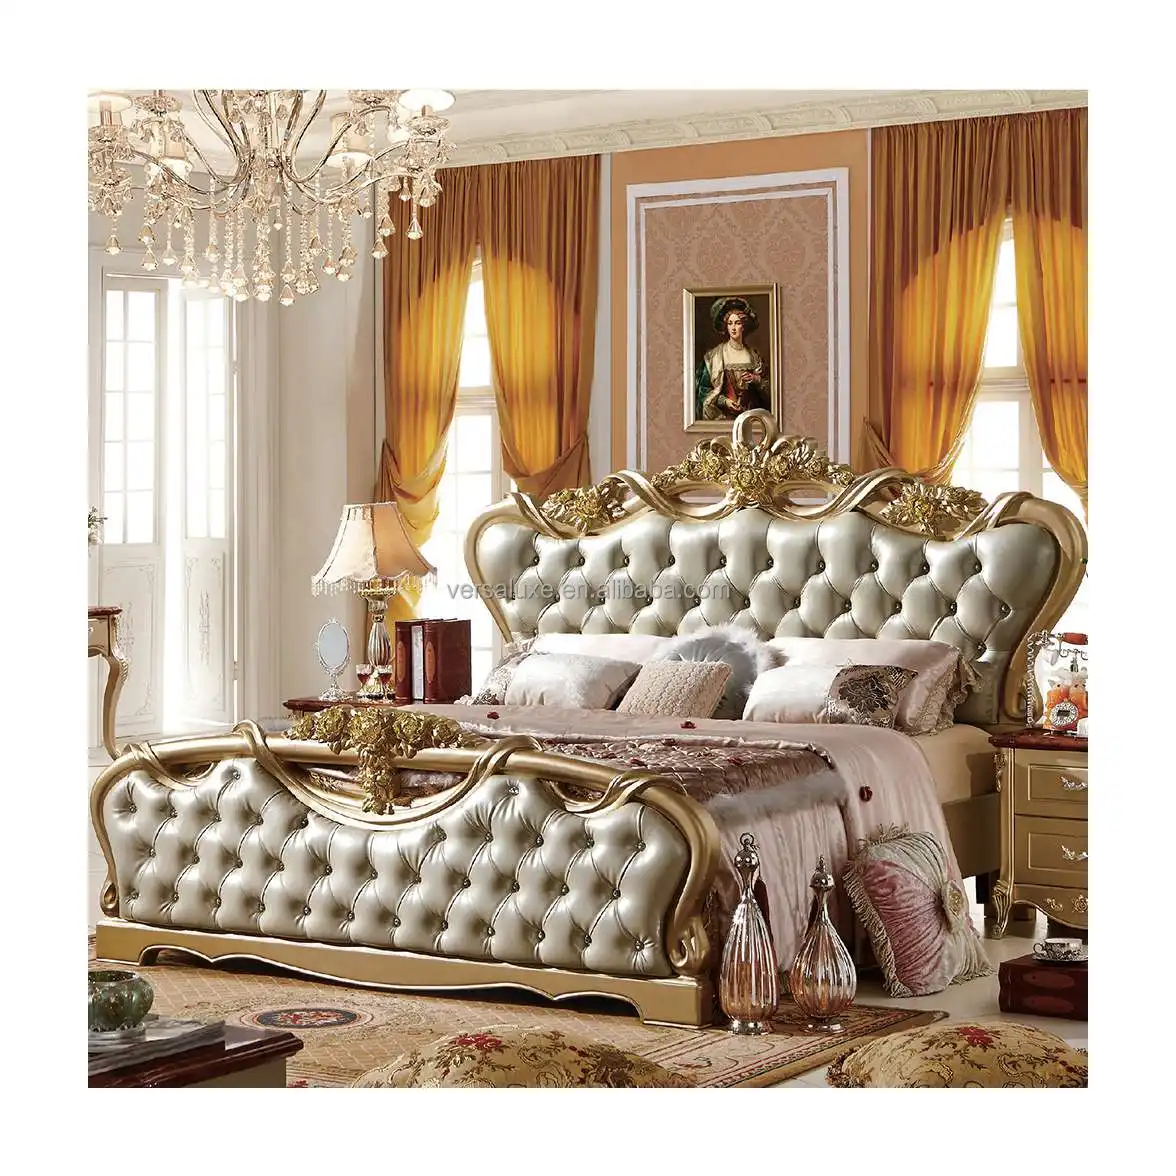 유럽 클래식 럭셔리 클래식 디자인 골동품 퀸 사이즈 킹 사이즈 더블 침대 세트 전체 침구 세트 나무 침대